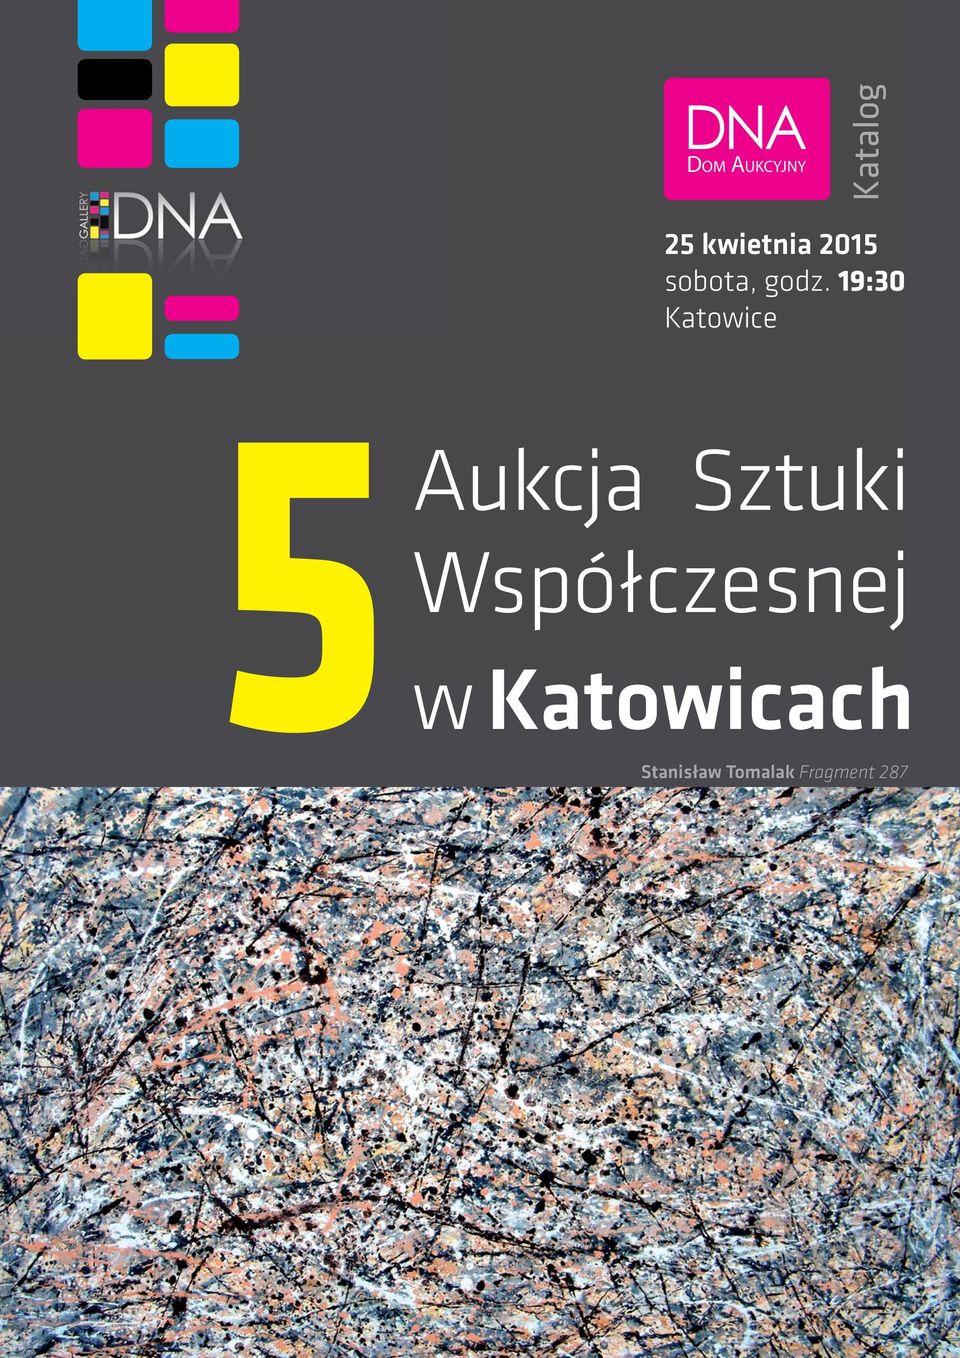 19:30 Katowice Aukcja Sztuki